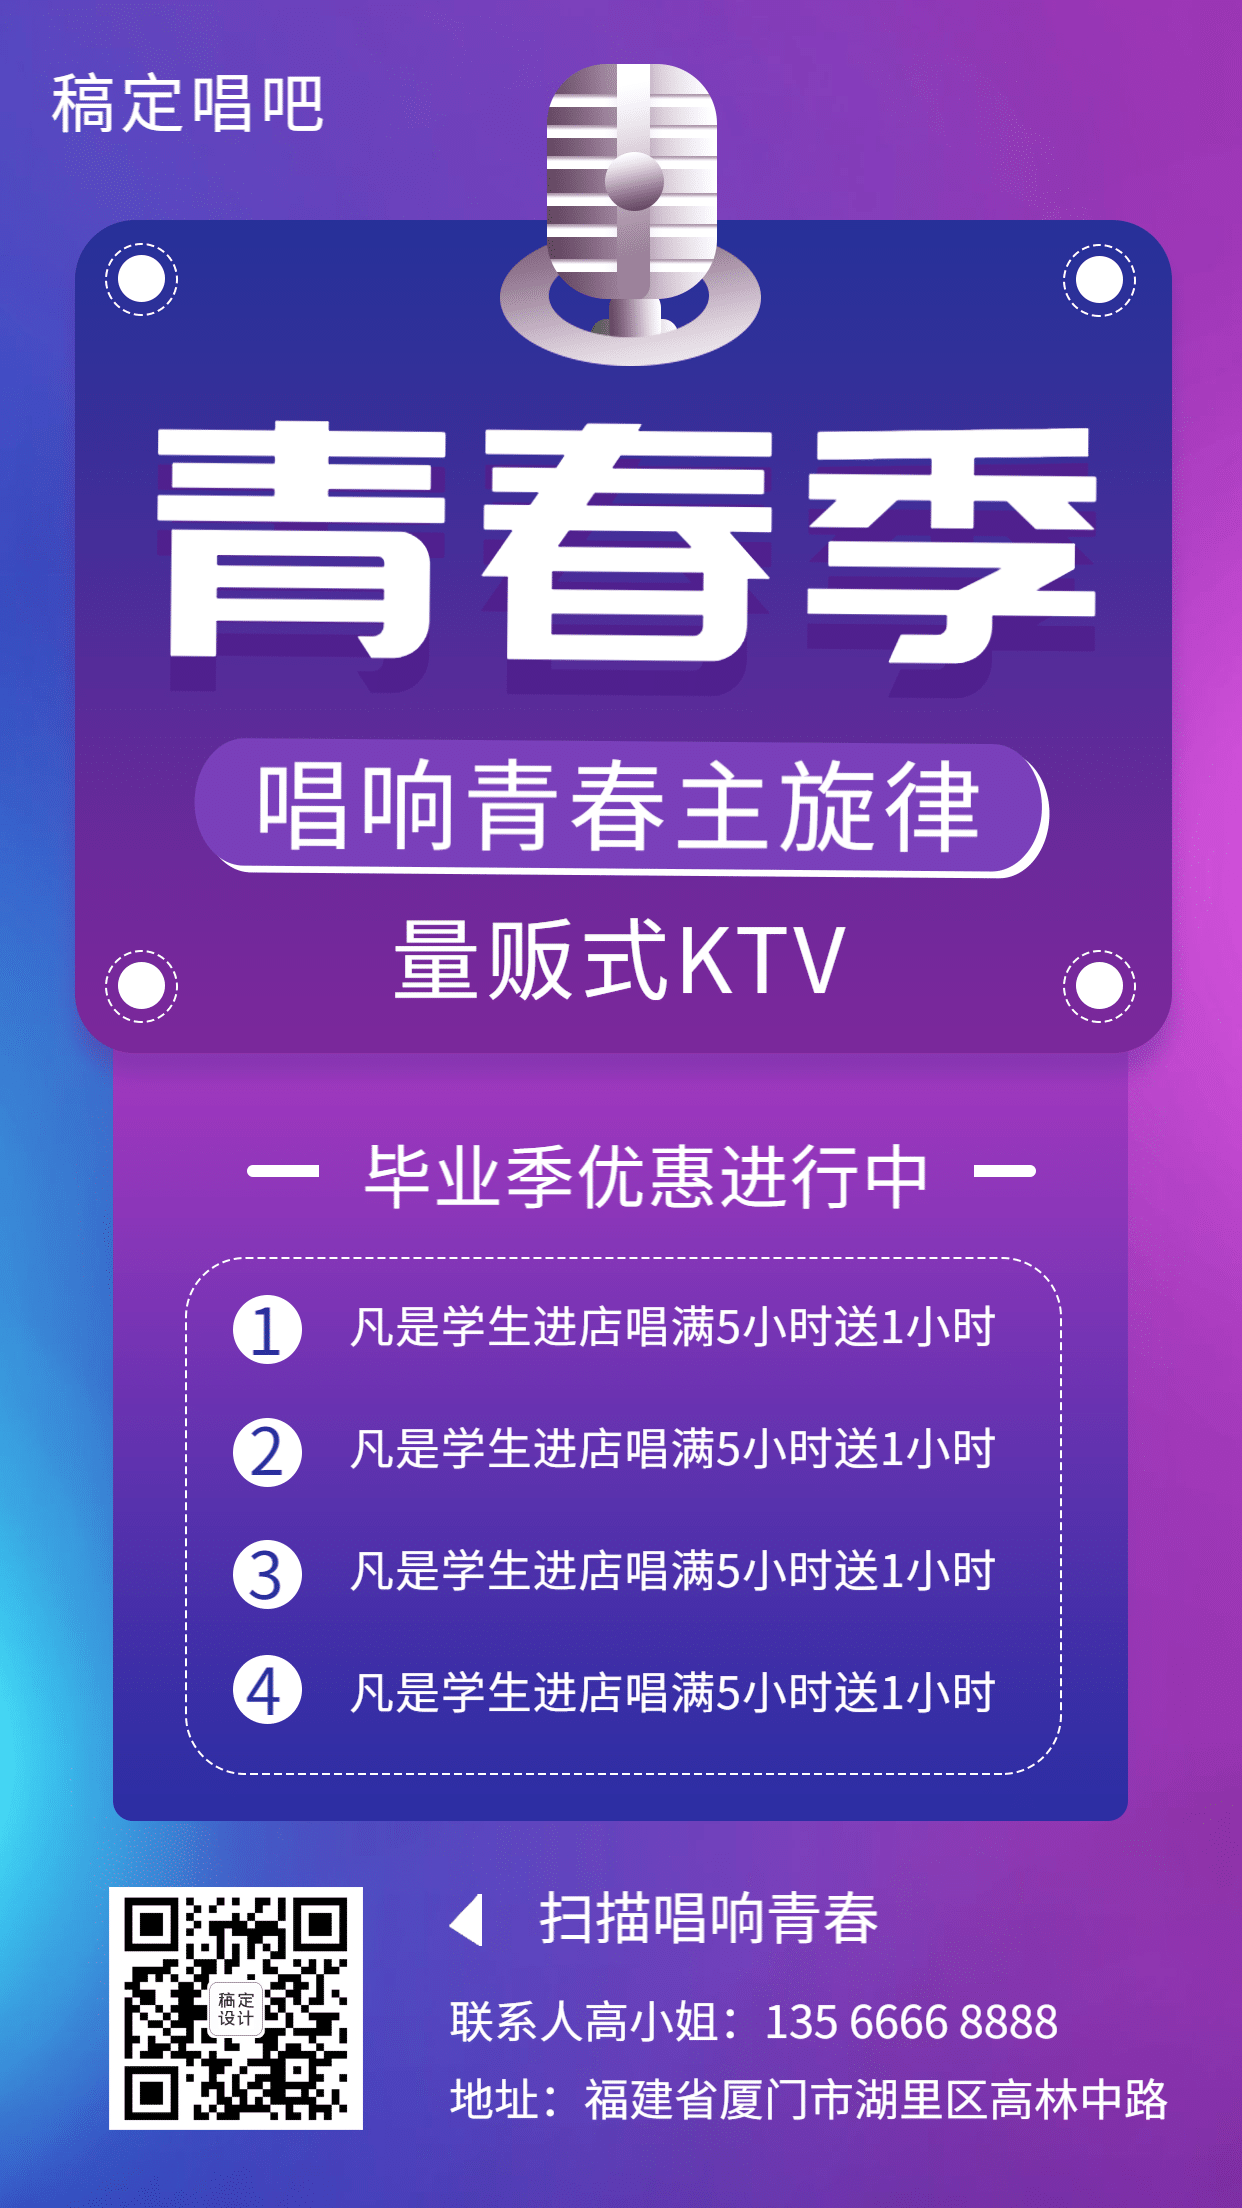 KTV酷炫暑期促销手机海报预览效果